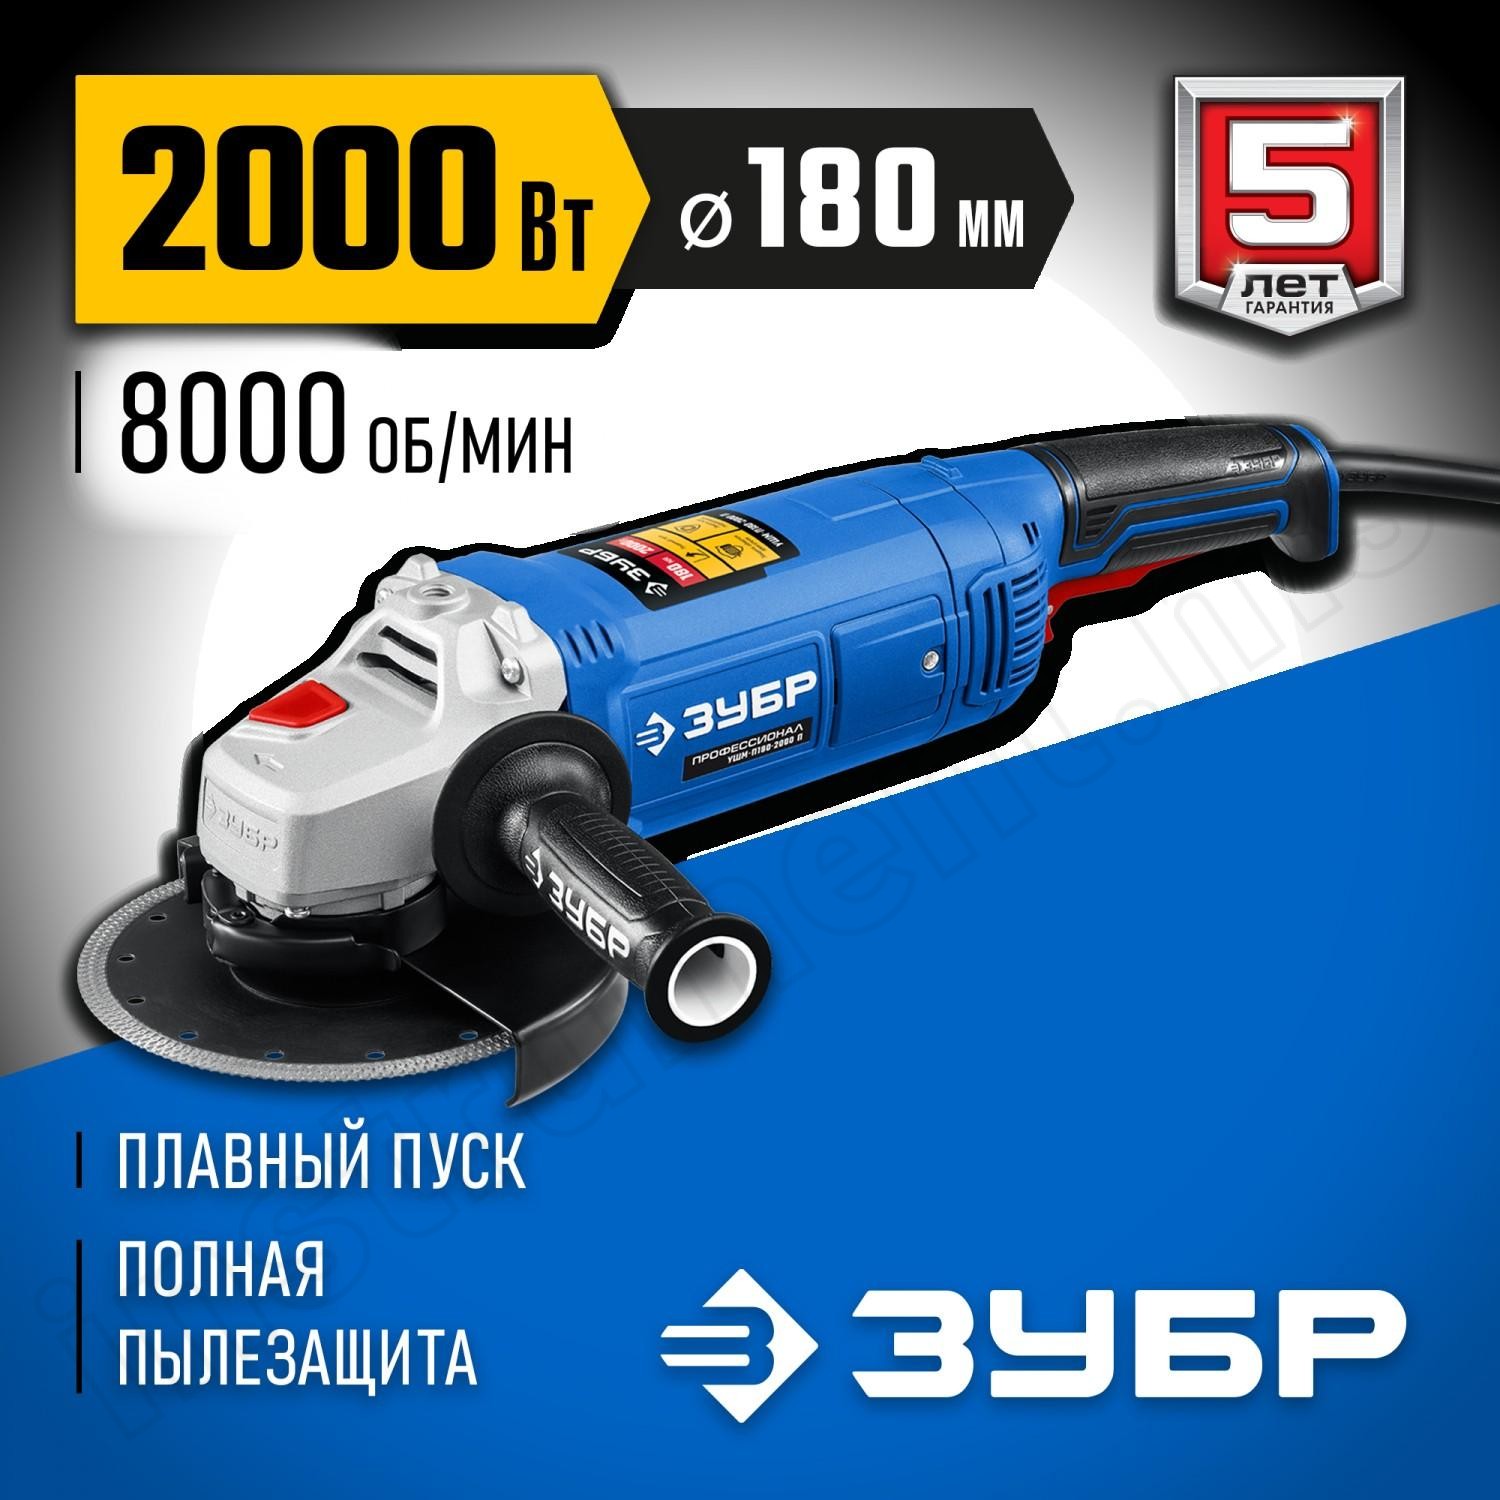 ЗУБР 2000 Вт, 180 мм, углошлифовальная машина (болгарка) УШМ-П180-2000 П Профессионал - фото 1